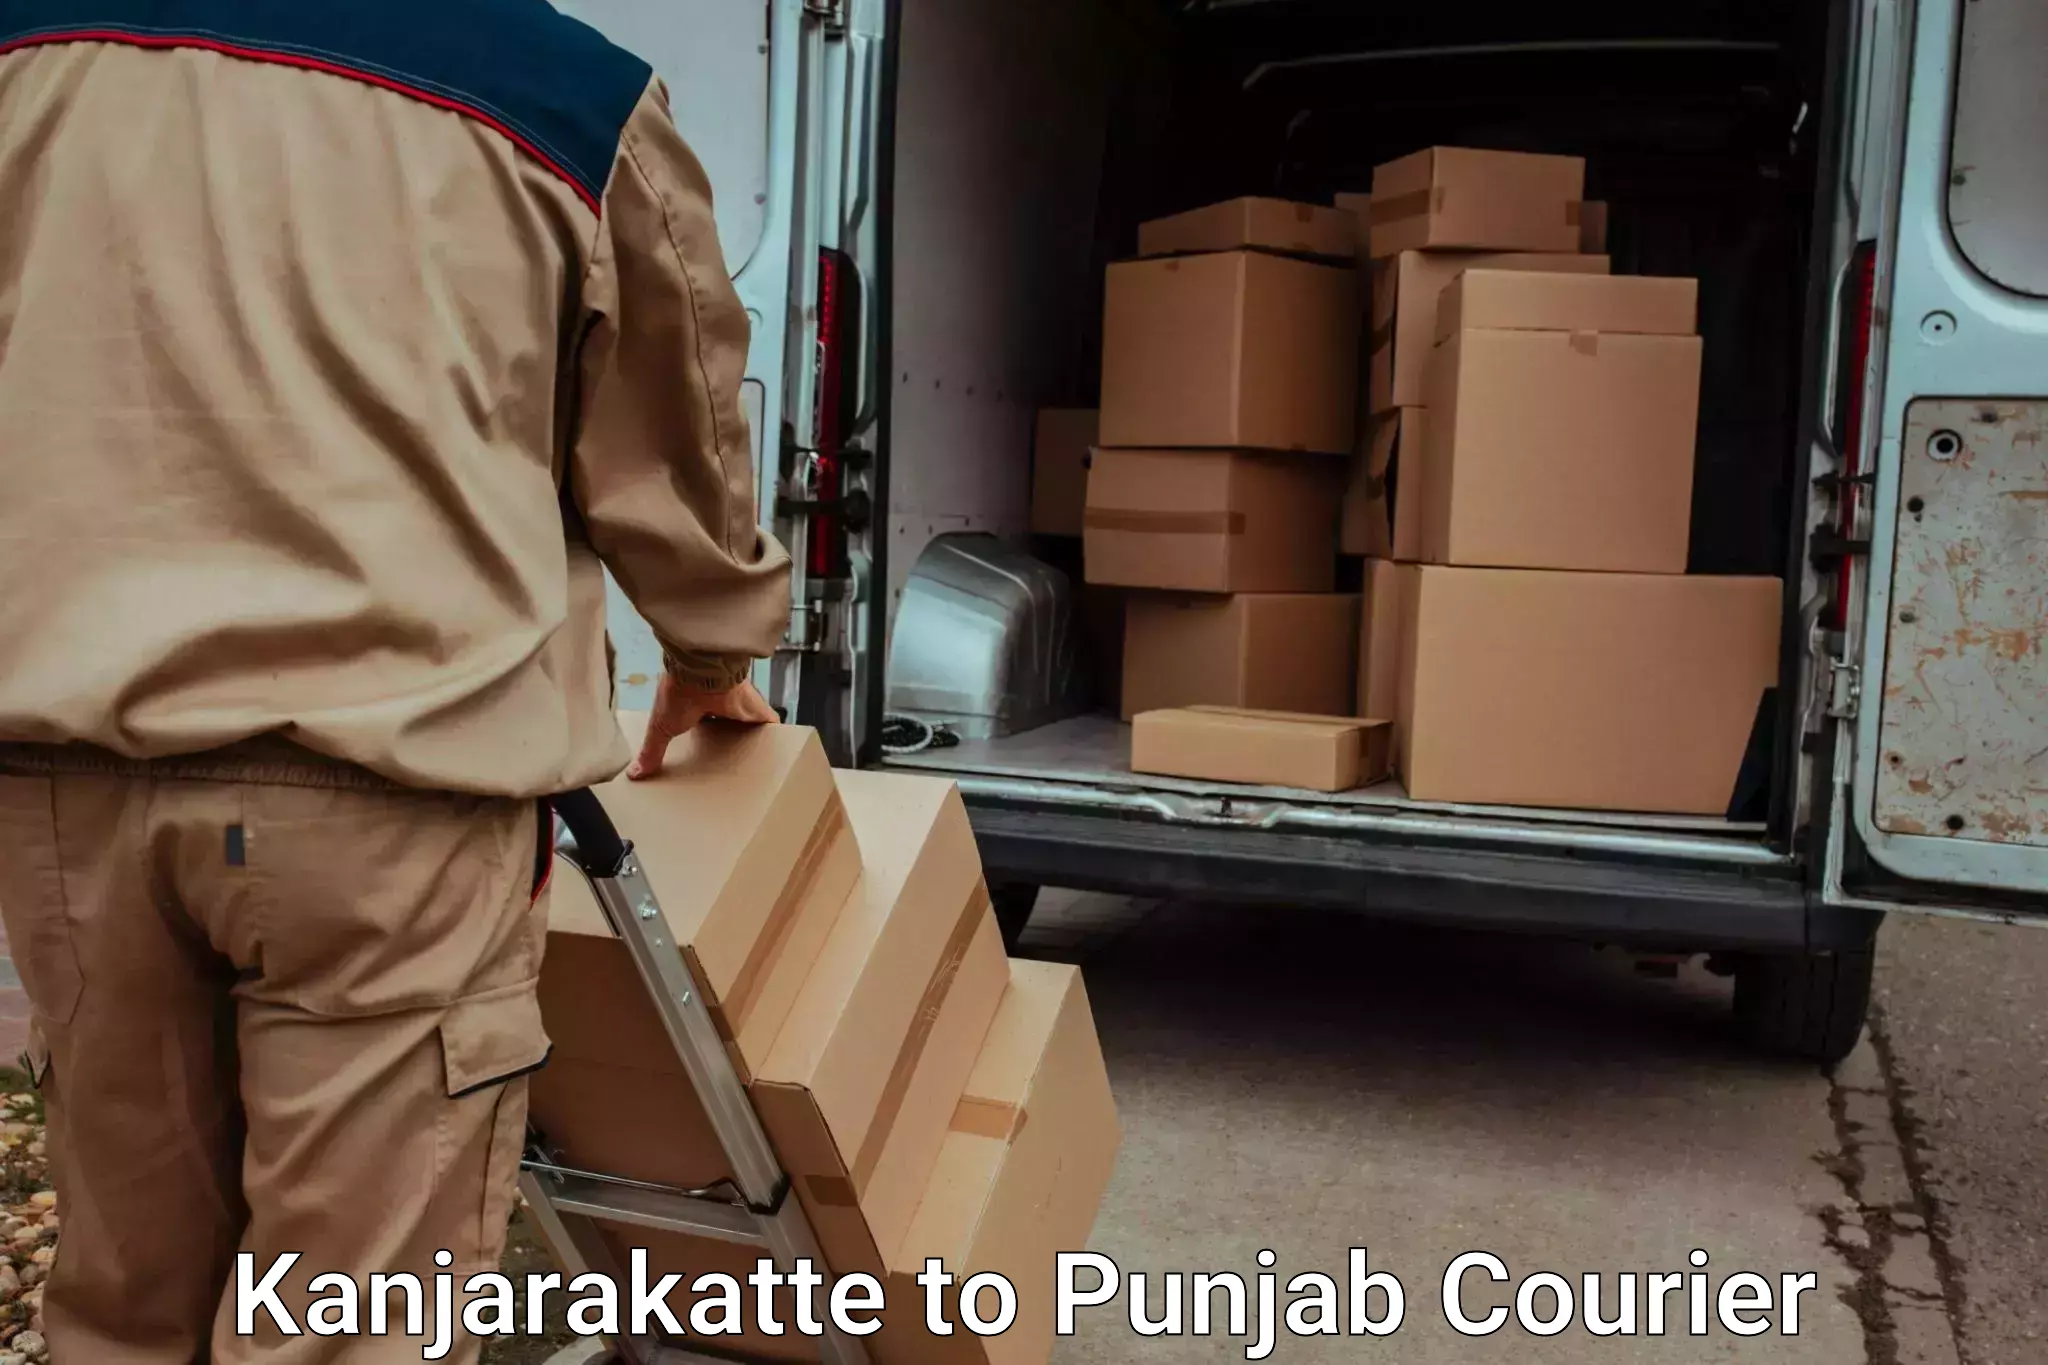 Hassle-free luggage shipping Kanjarakatte to Jalandhar